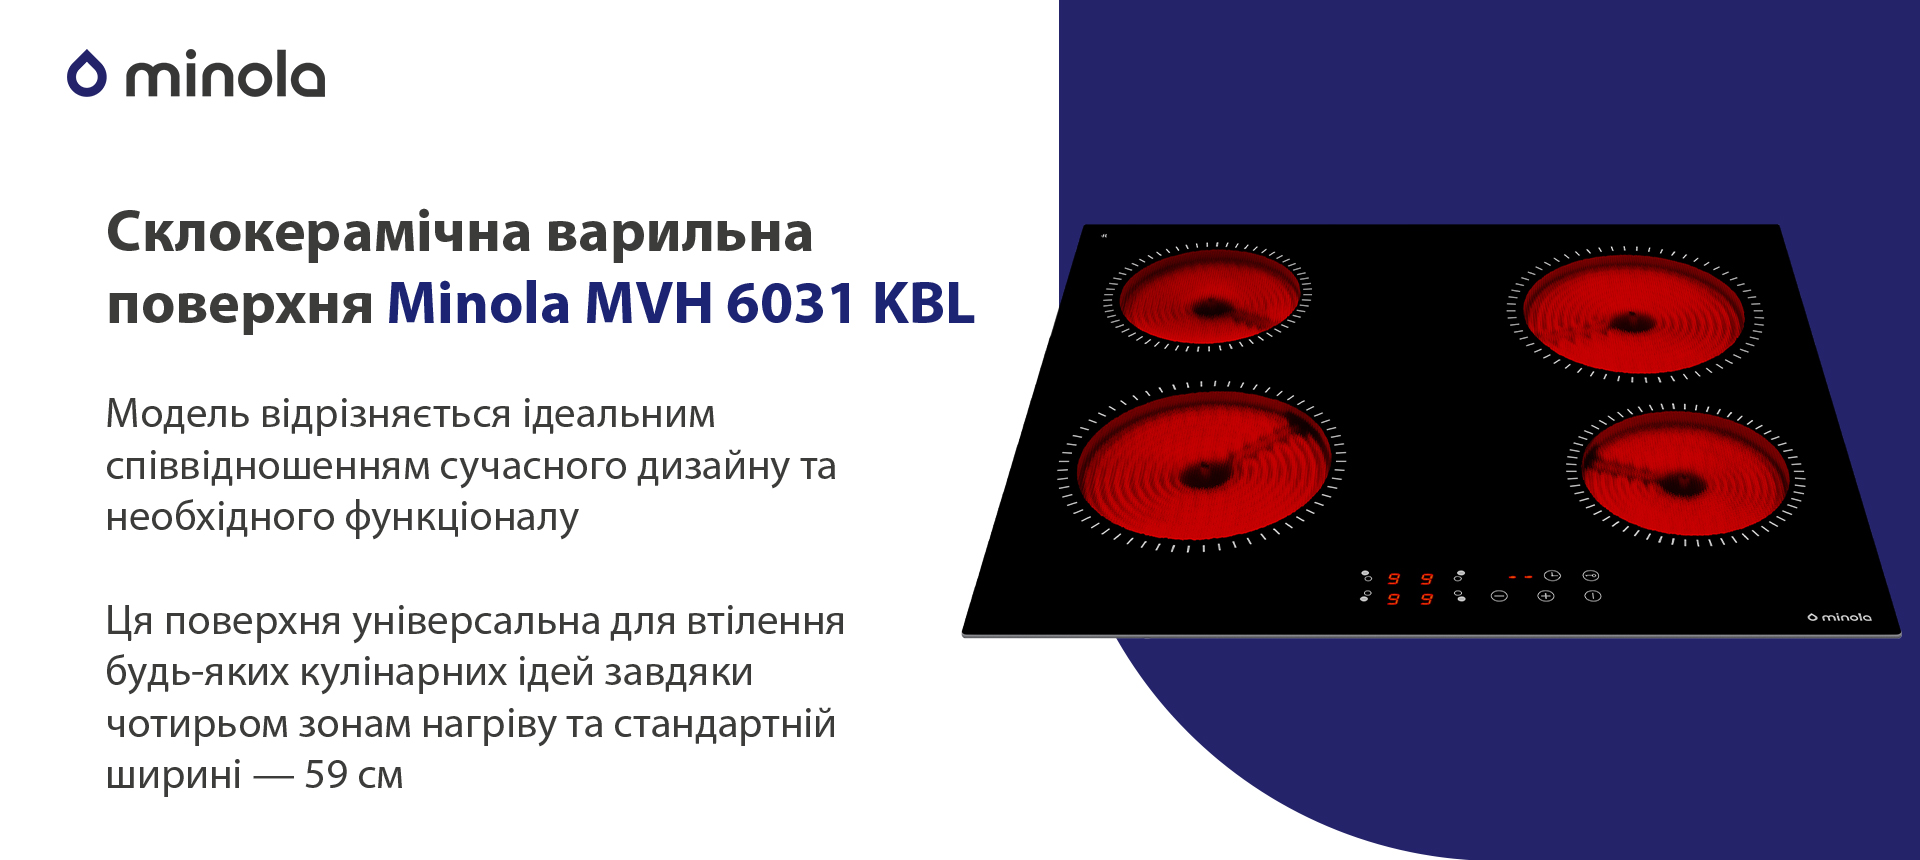 Електрична варильна поверхня Minola MVH 6031 KBL зовнішній вигляд - фото 9